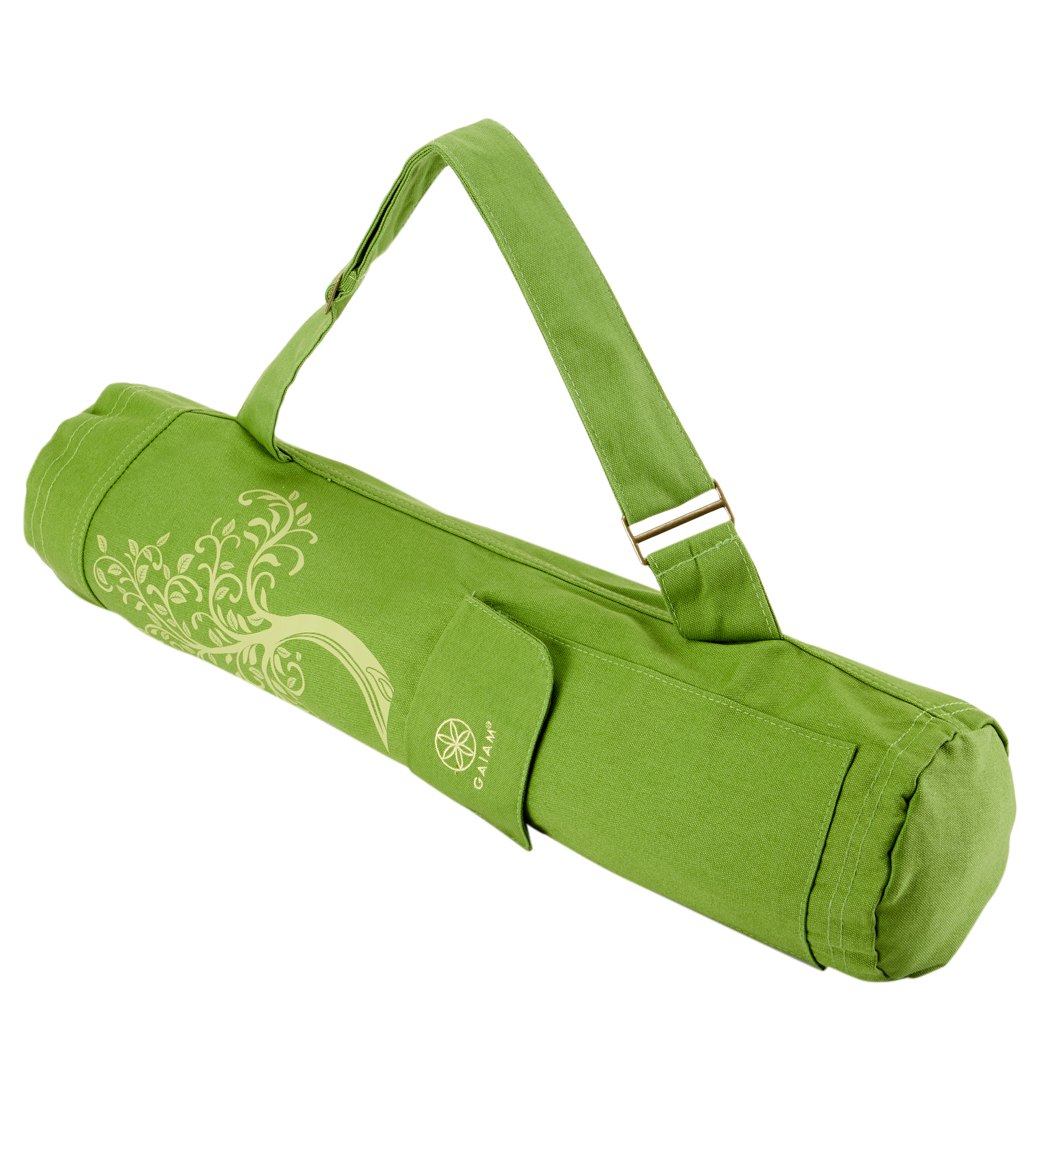 Gaiam Yoga Mat Bag – Full Zip Cargo Yoga Mat Carrier Bag